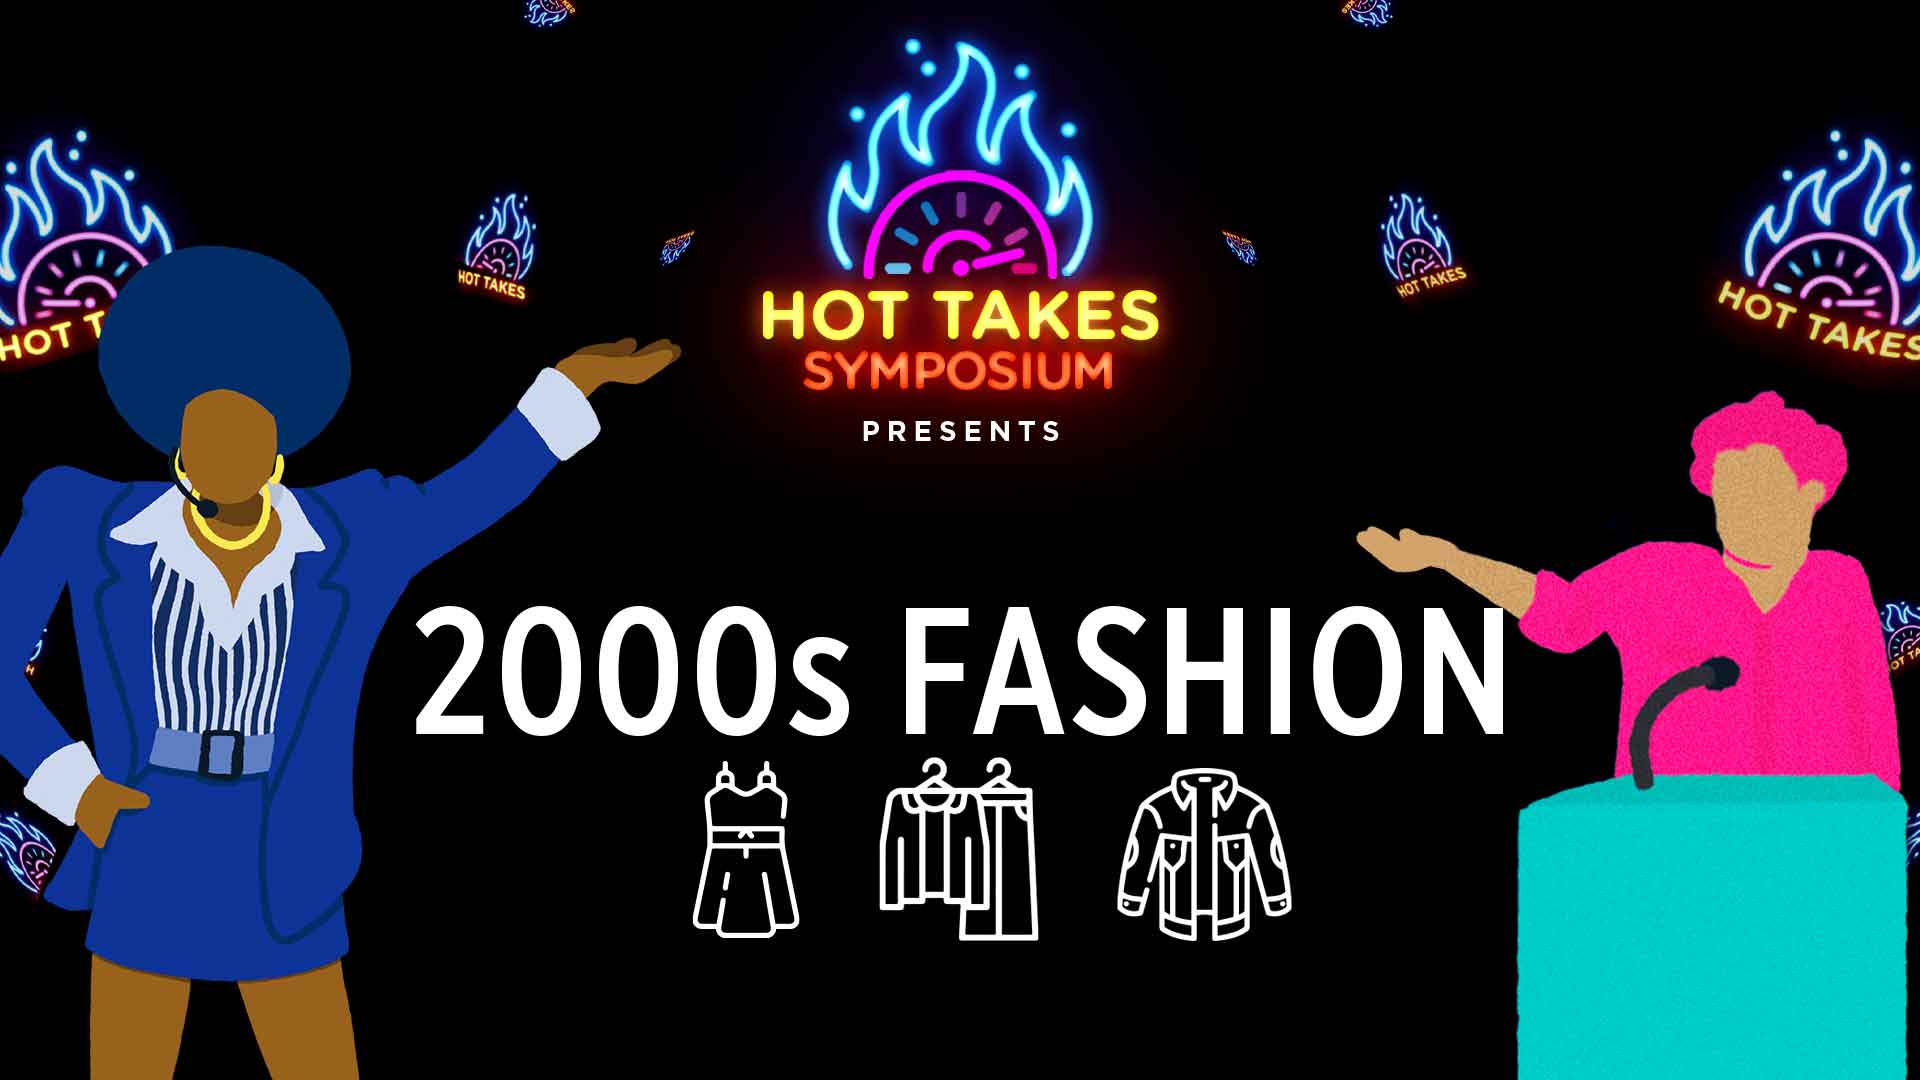 Hot Takes Symposium 2000s Fashion